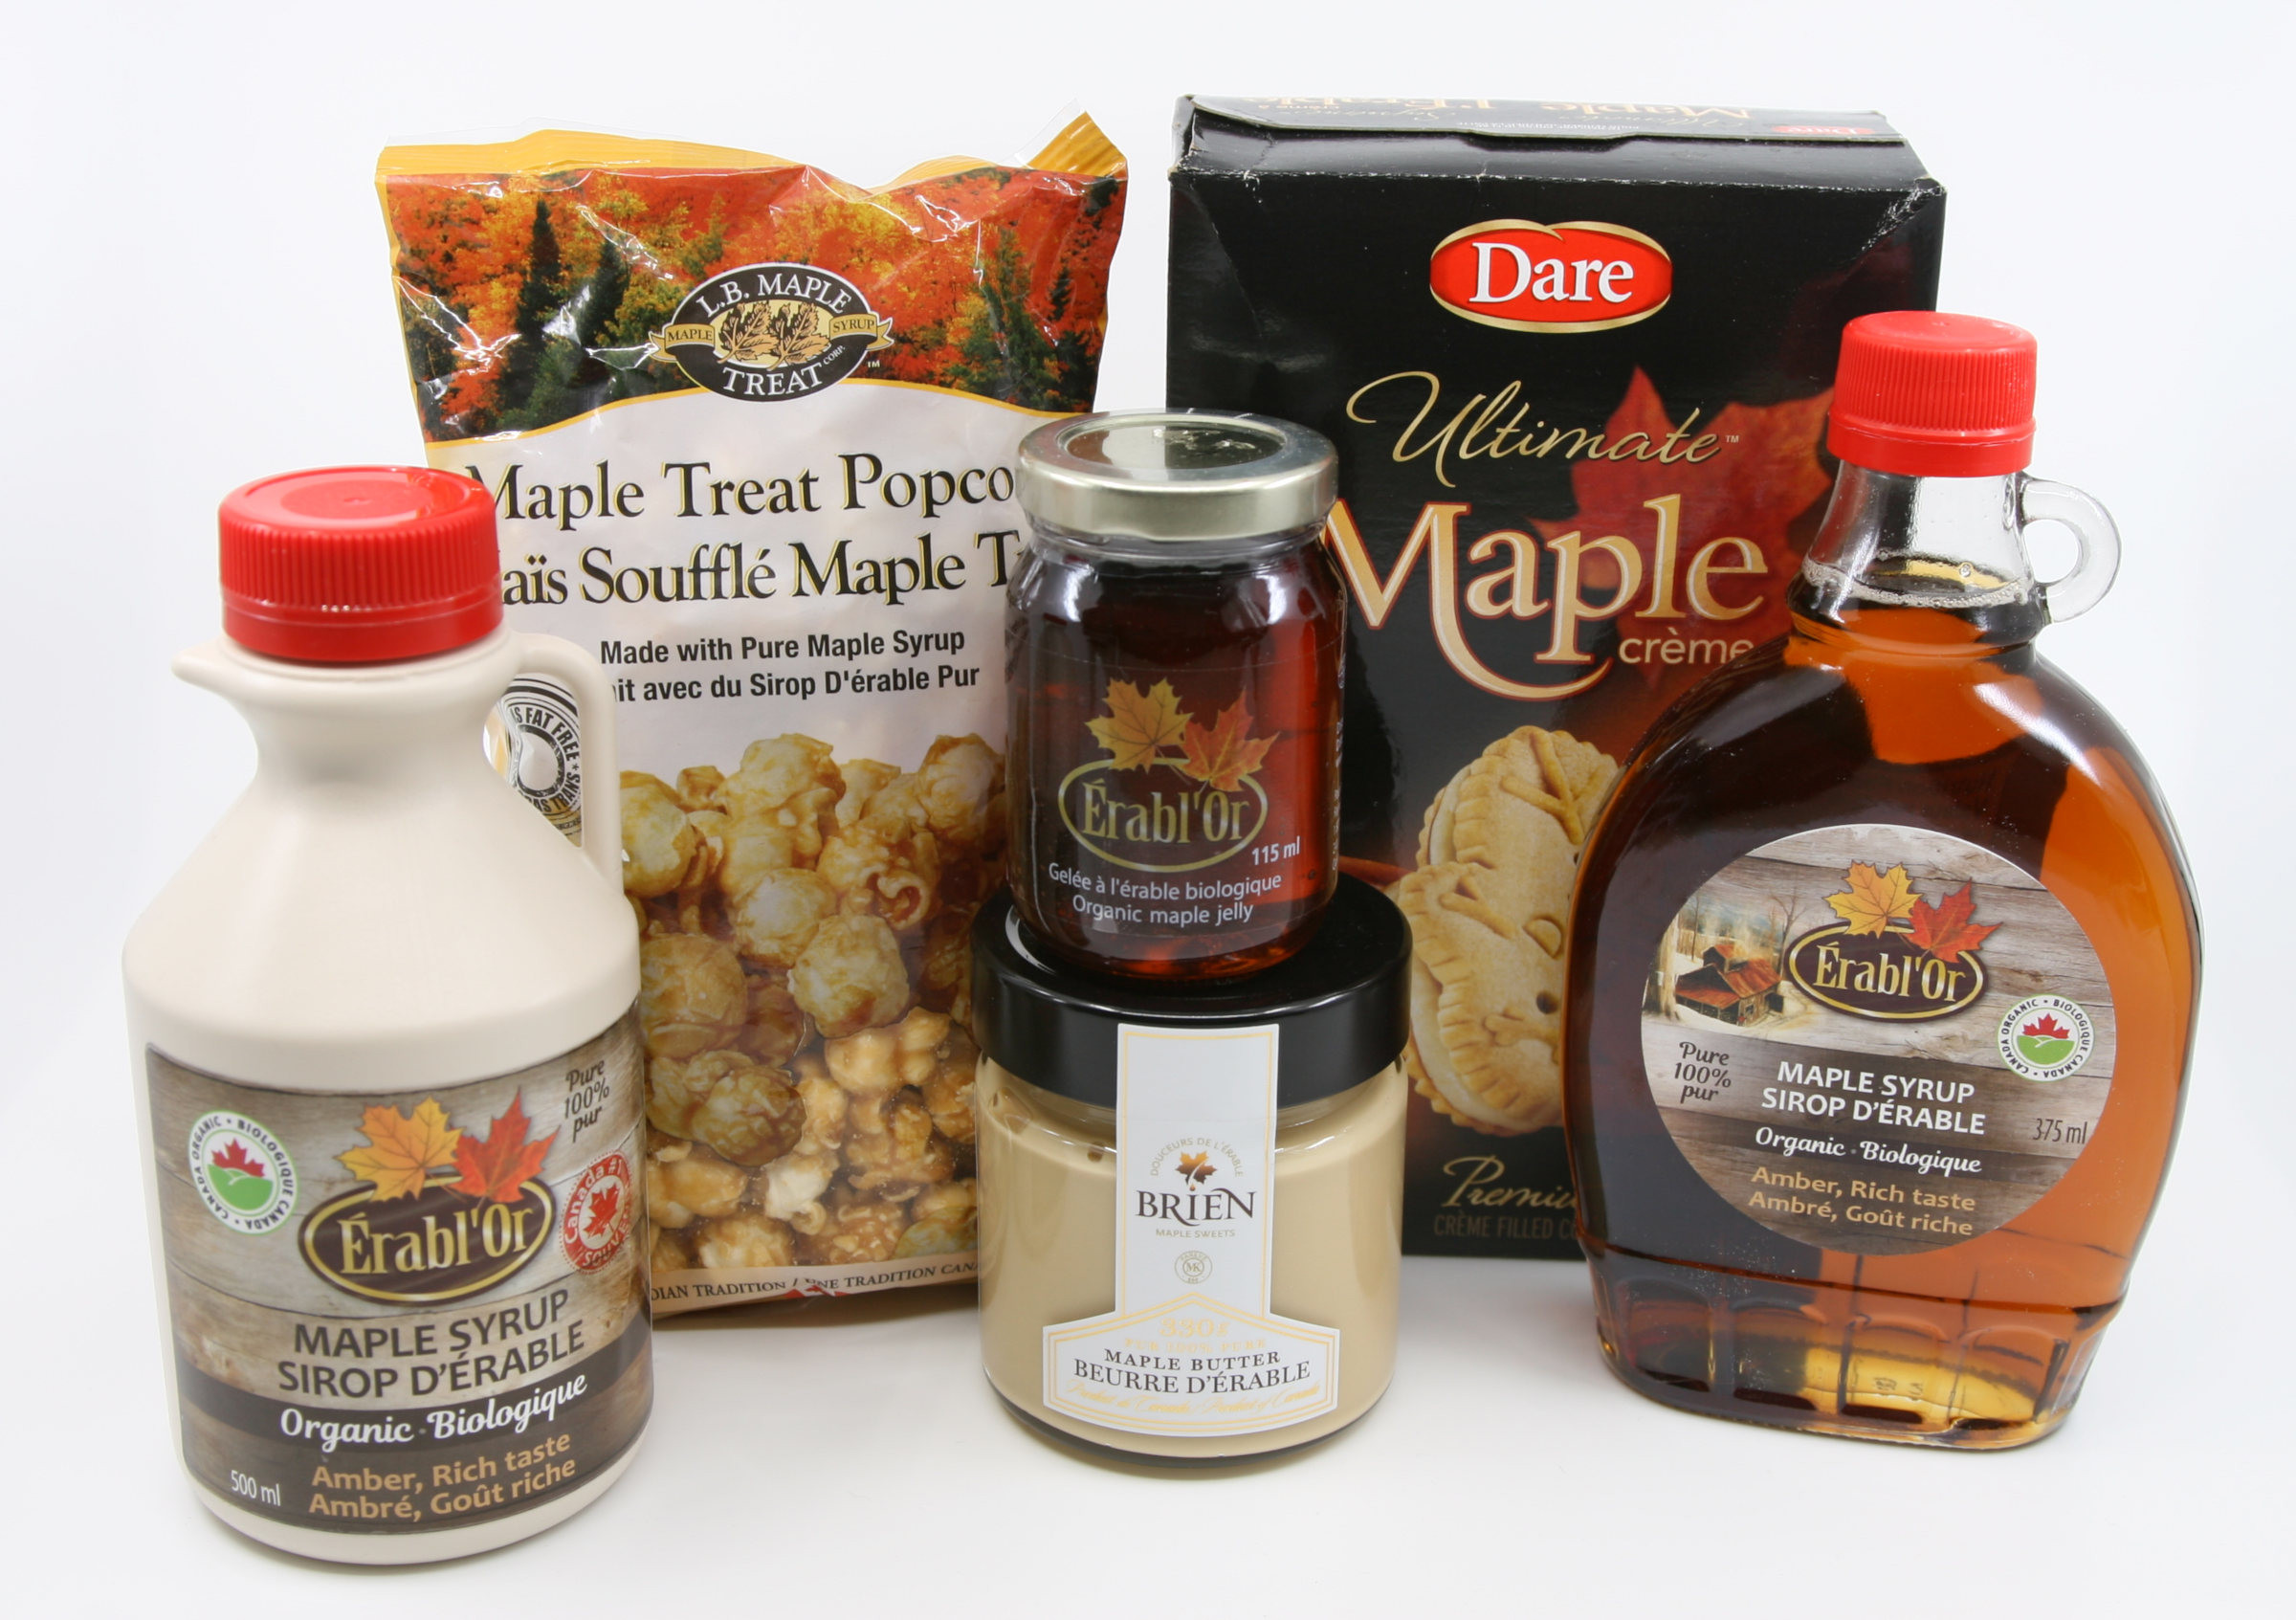 Juharszirupból készült termékek vannak a képen, juharszirupos popcorn, süti, juharvaj, juharszirupból készült zselé